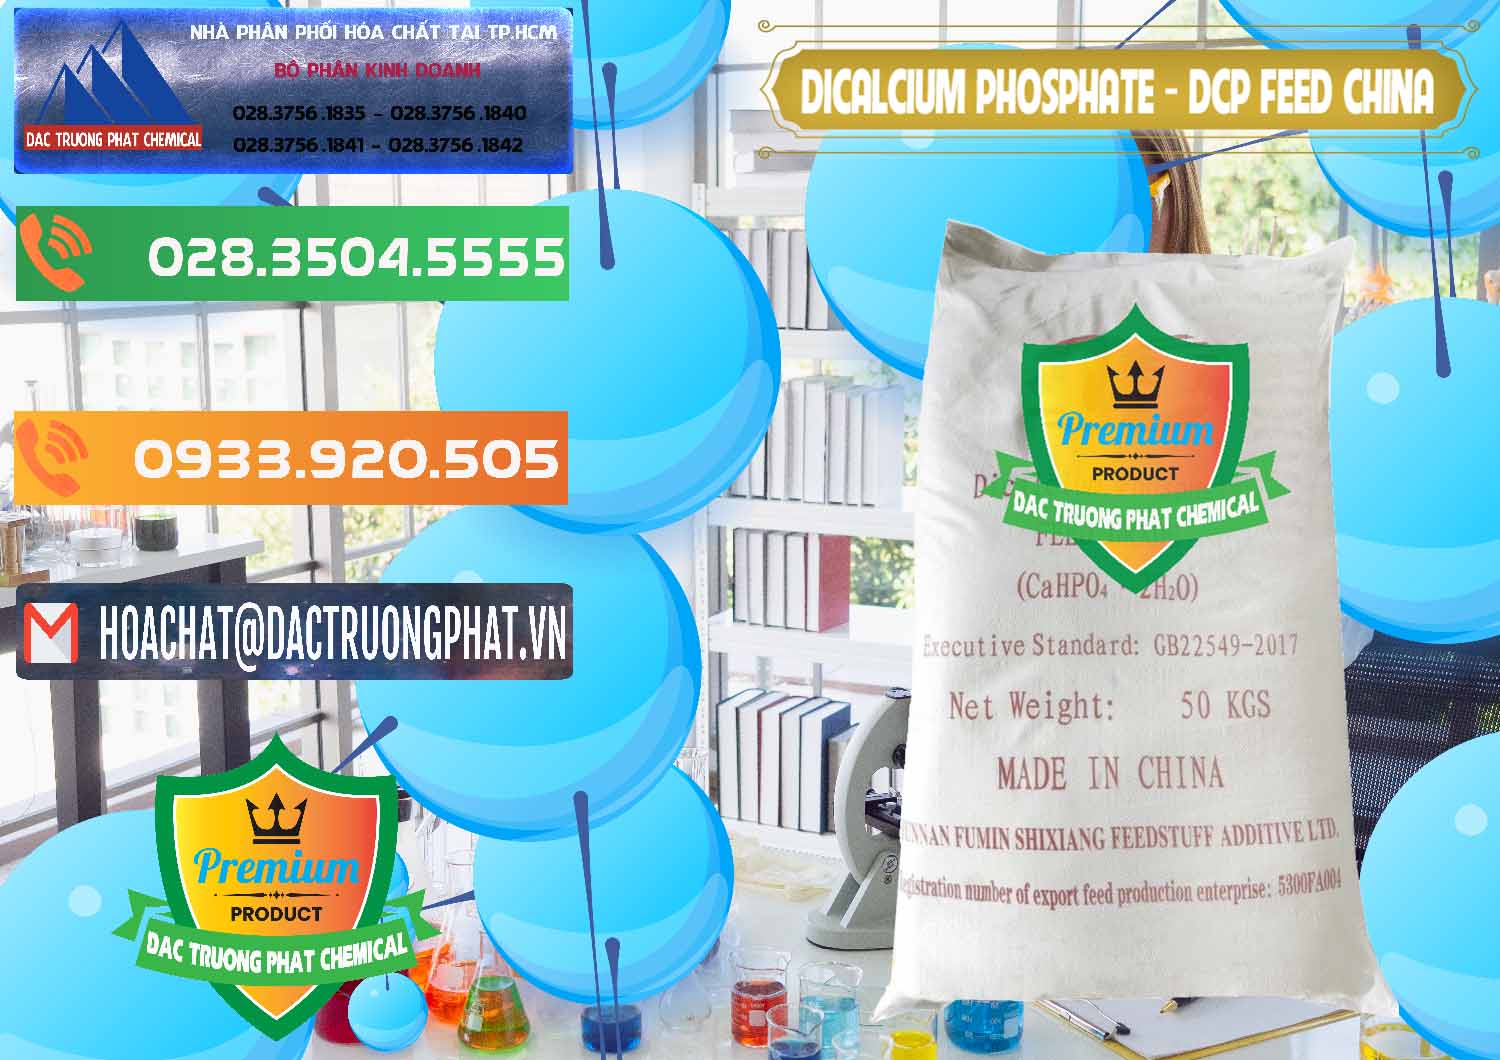 Đơn vị chuyên bán và cung ứng Dicalcium Phosphate - DCP Feed Grade Trung Quốc China - 0296 - Công ty chuyên kinh doanh - phân phối hóa chất tại TP.HCM - hoachatxulynuoc.com.vn